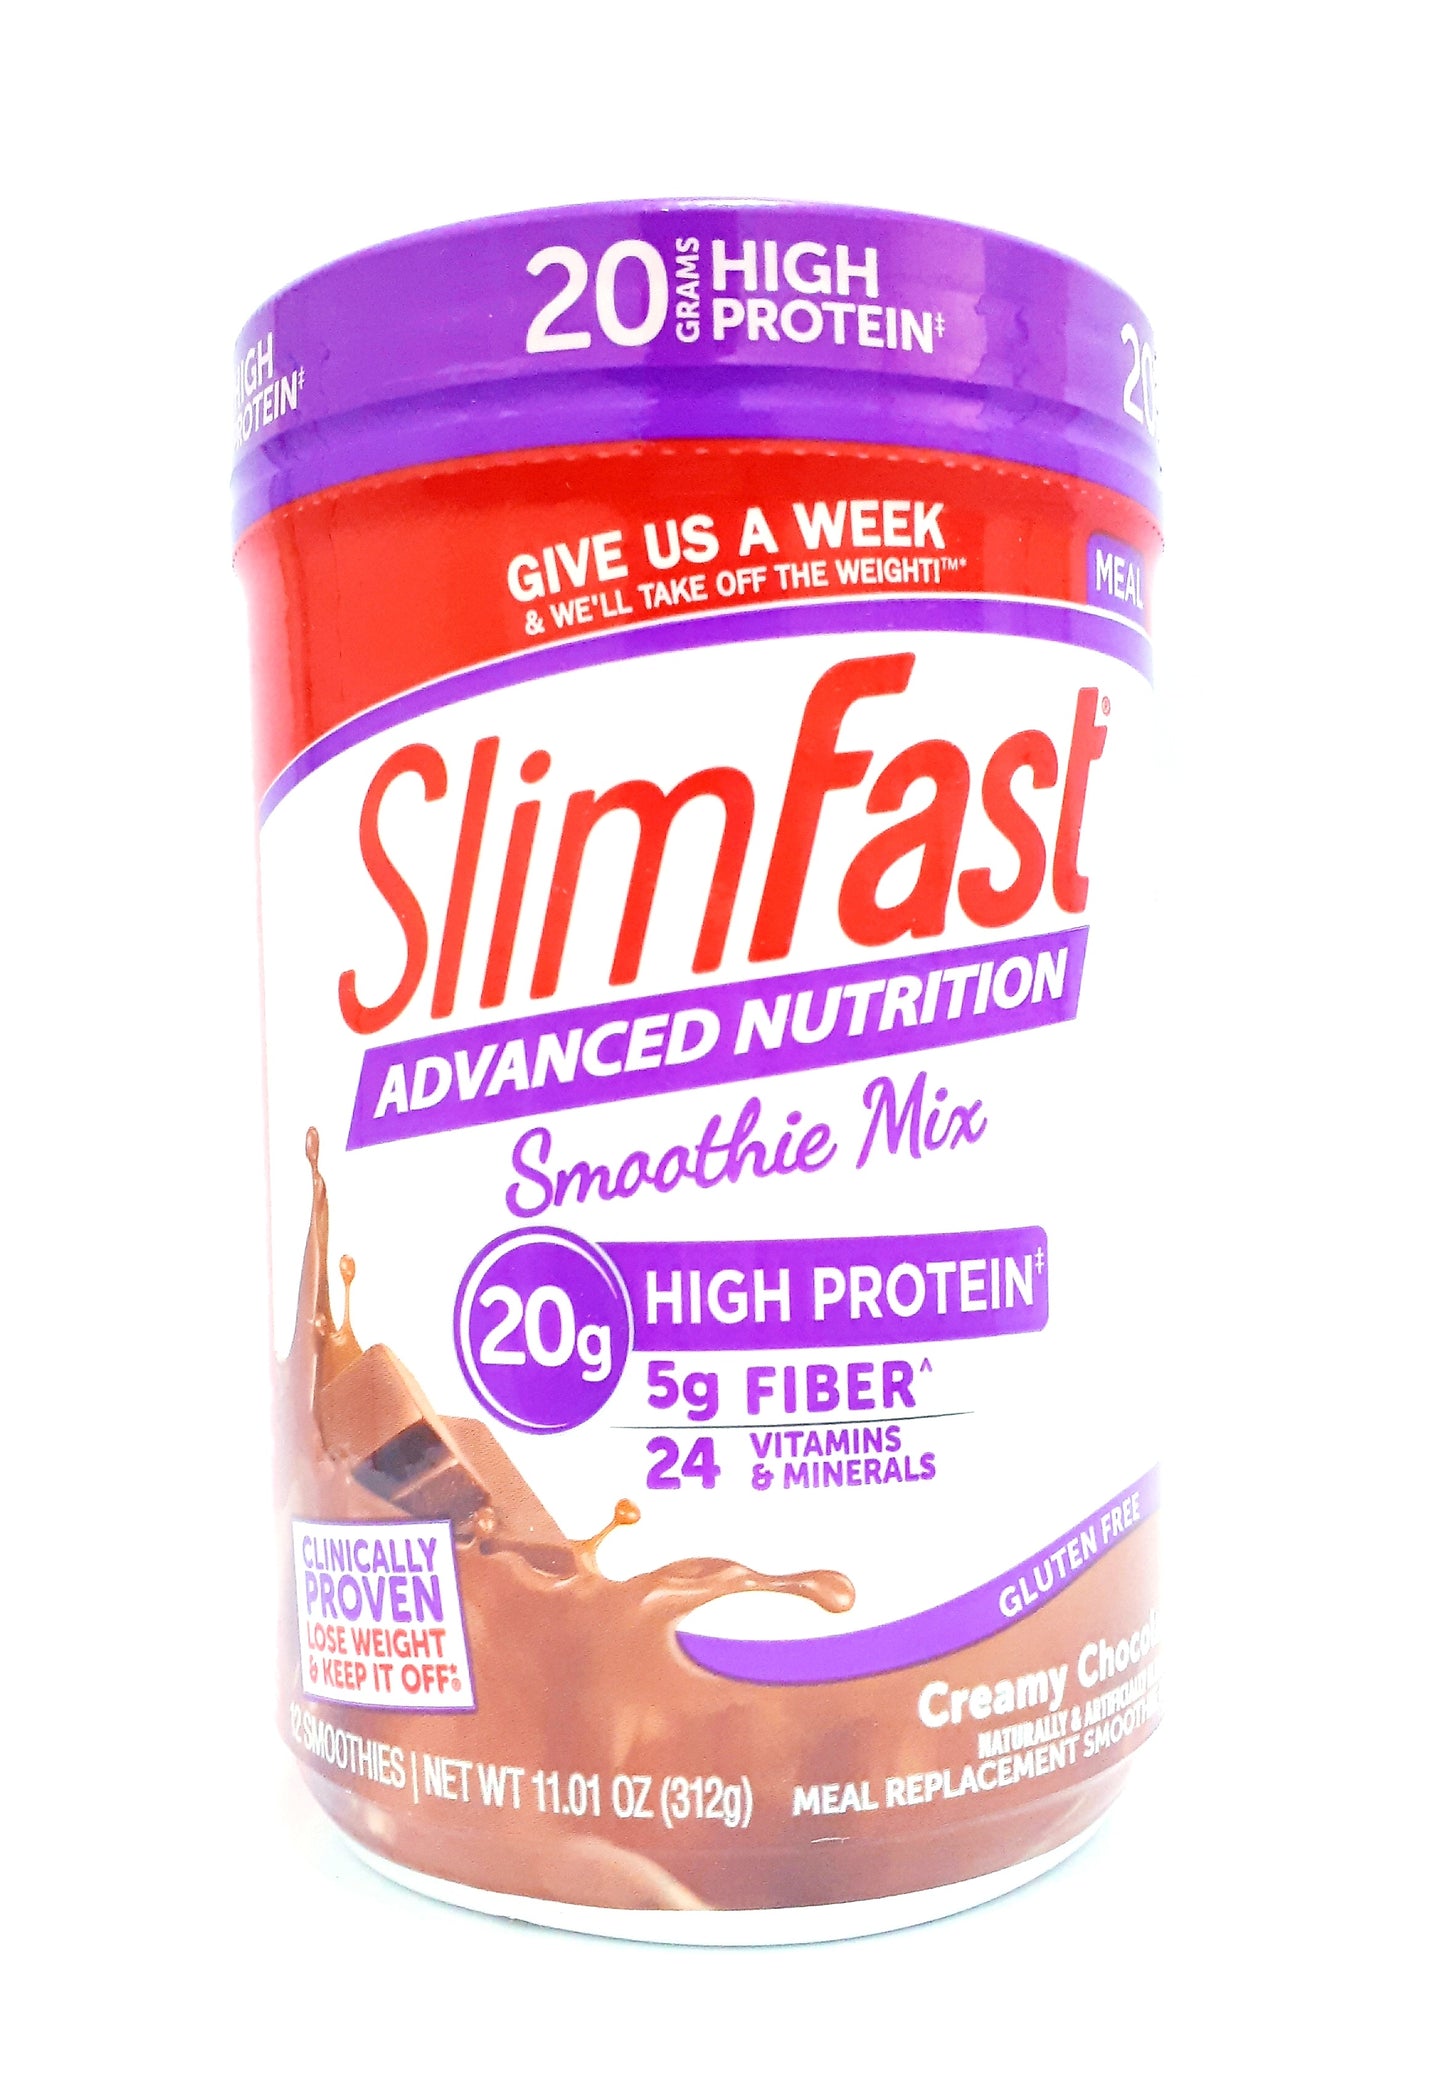 Slimfast Advanced Nutrition Smoothie Mix 20 g High Protein Gluten free Creamy Chocolate 11.01oz 312g